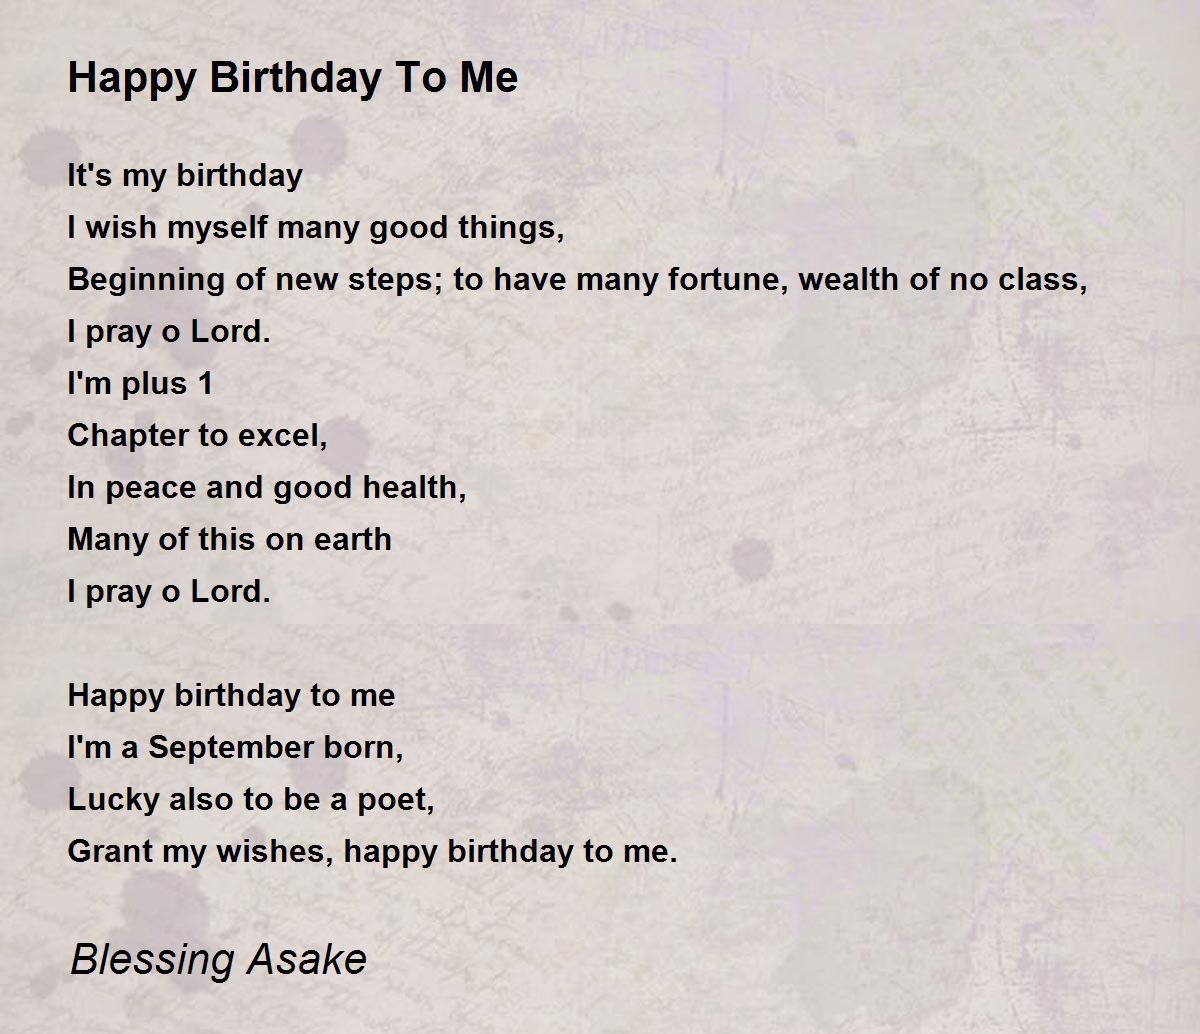 Happy Birthday To Me - Happy Birthday To Me Poem by Blessing Asake